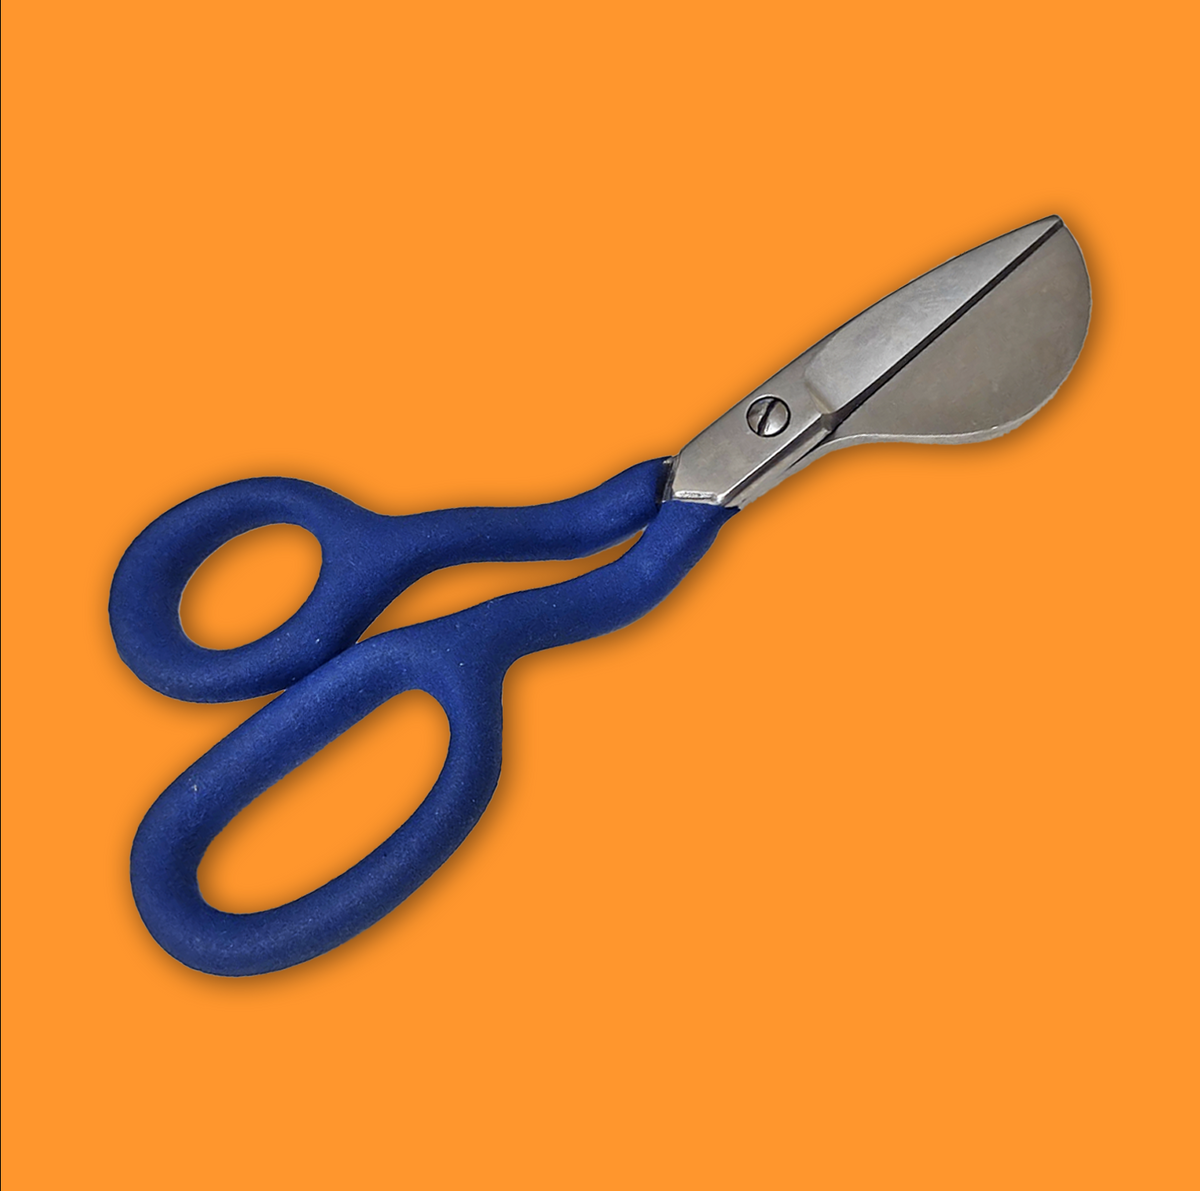 Duckbill scissors for left hand applications 6/15.2